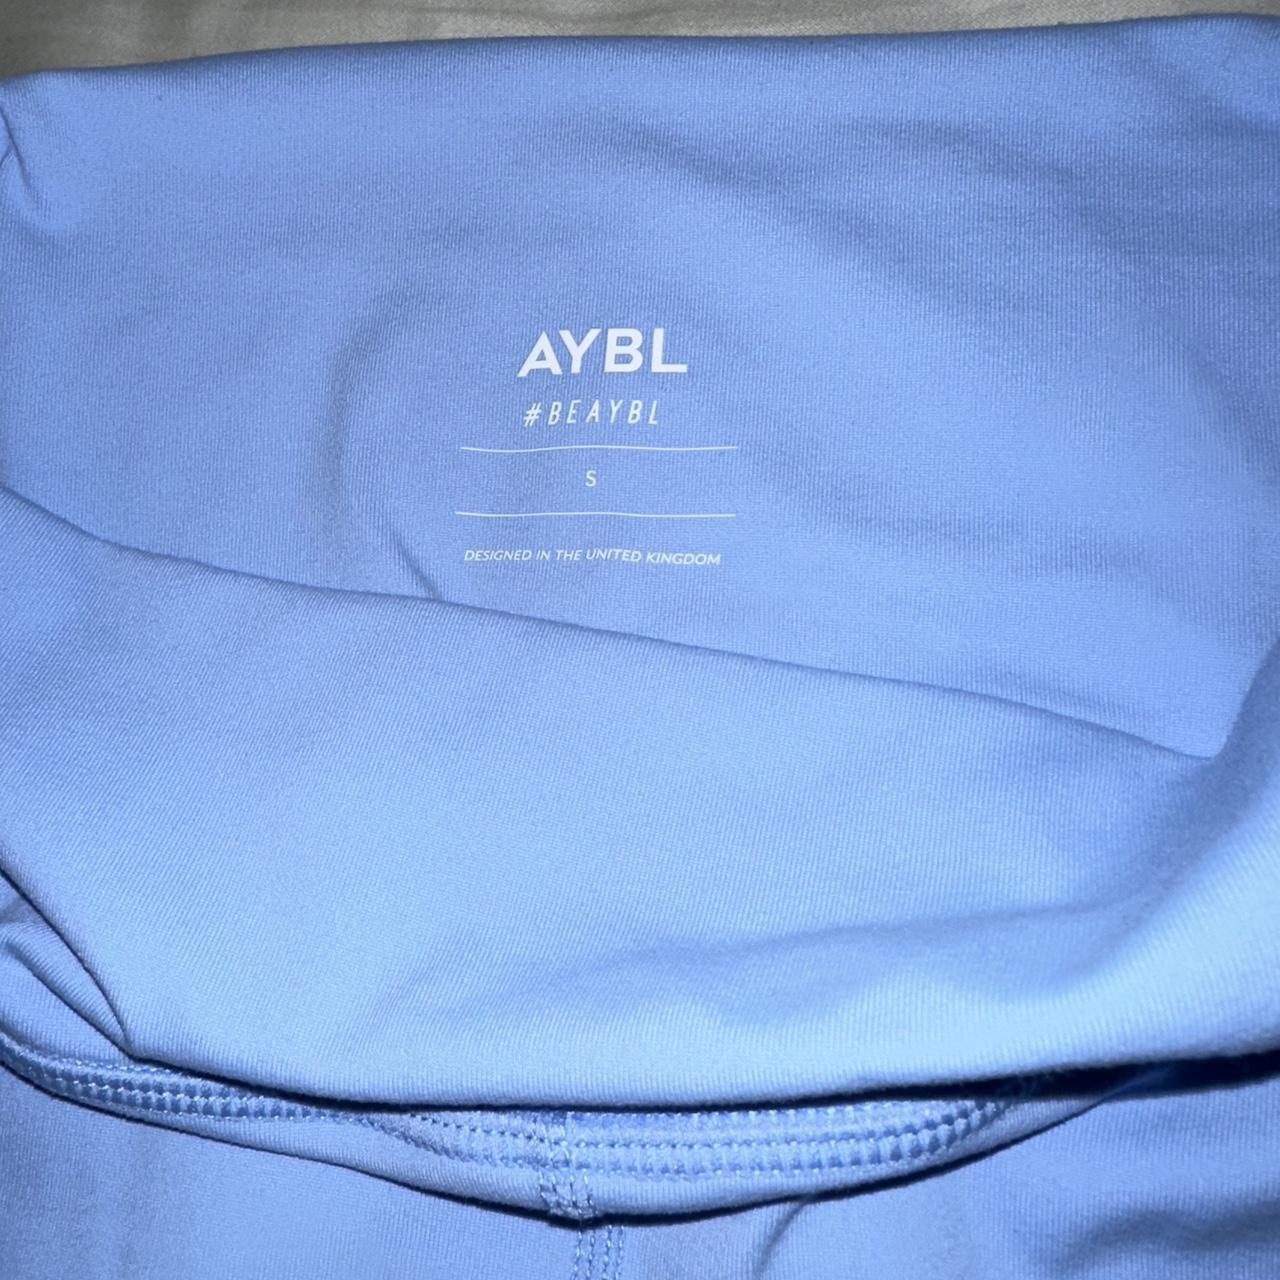 Aybl core leggings Beaybl Placid blue - Depop